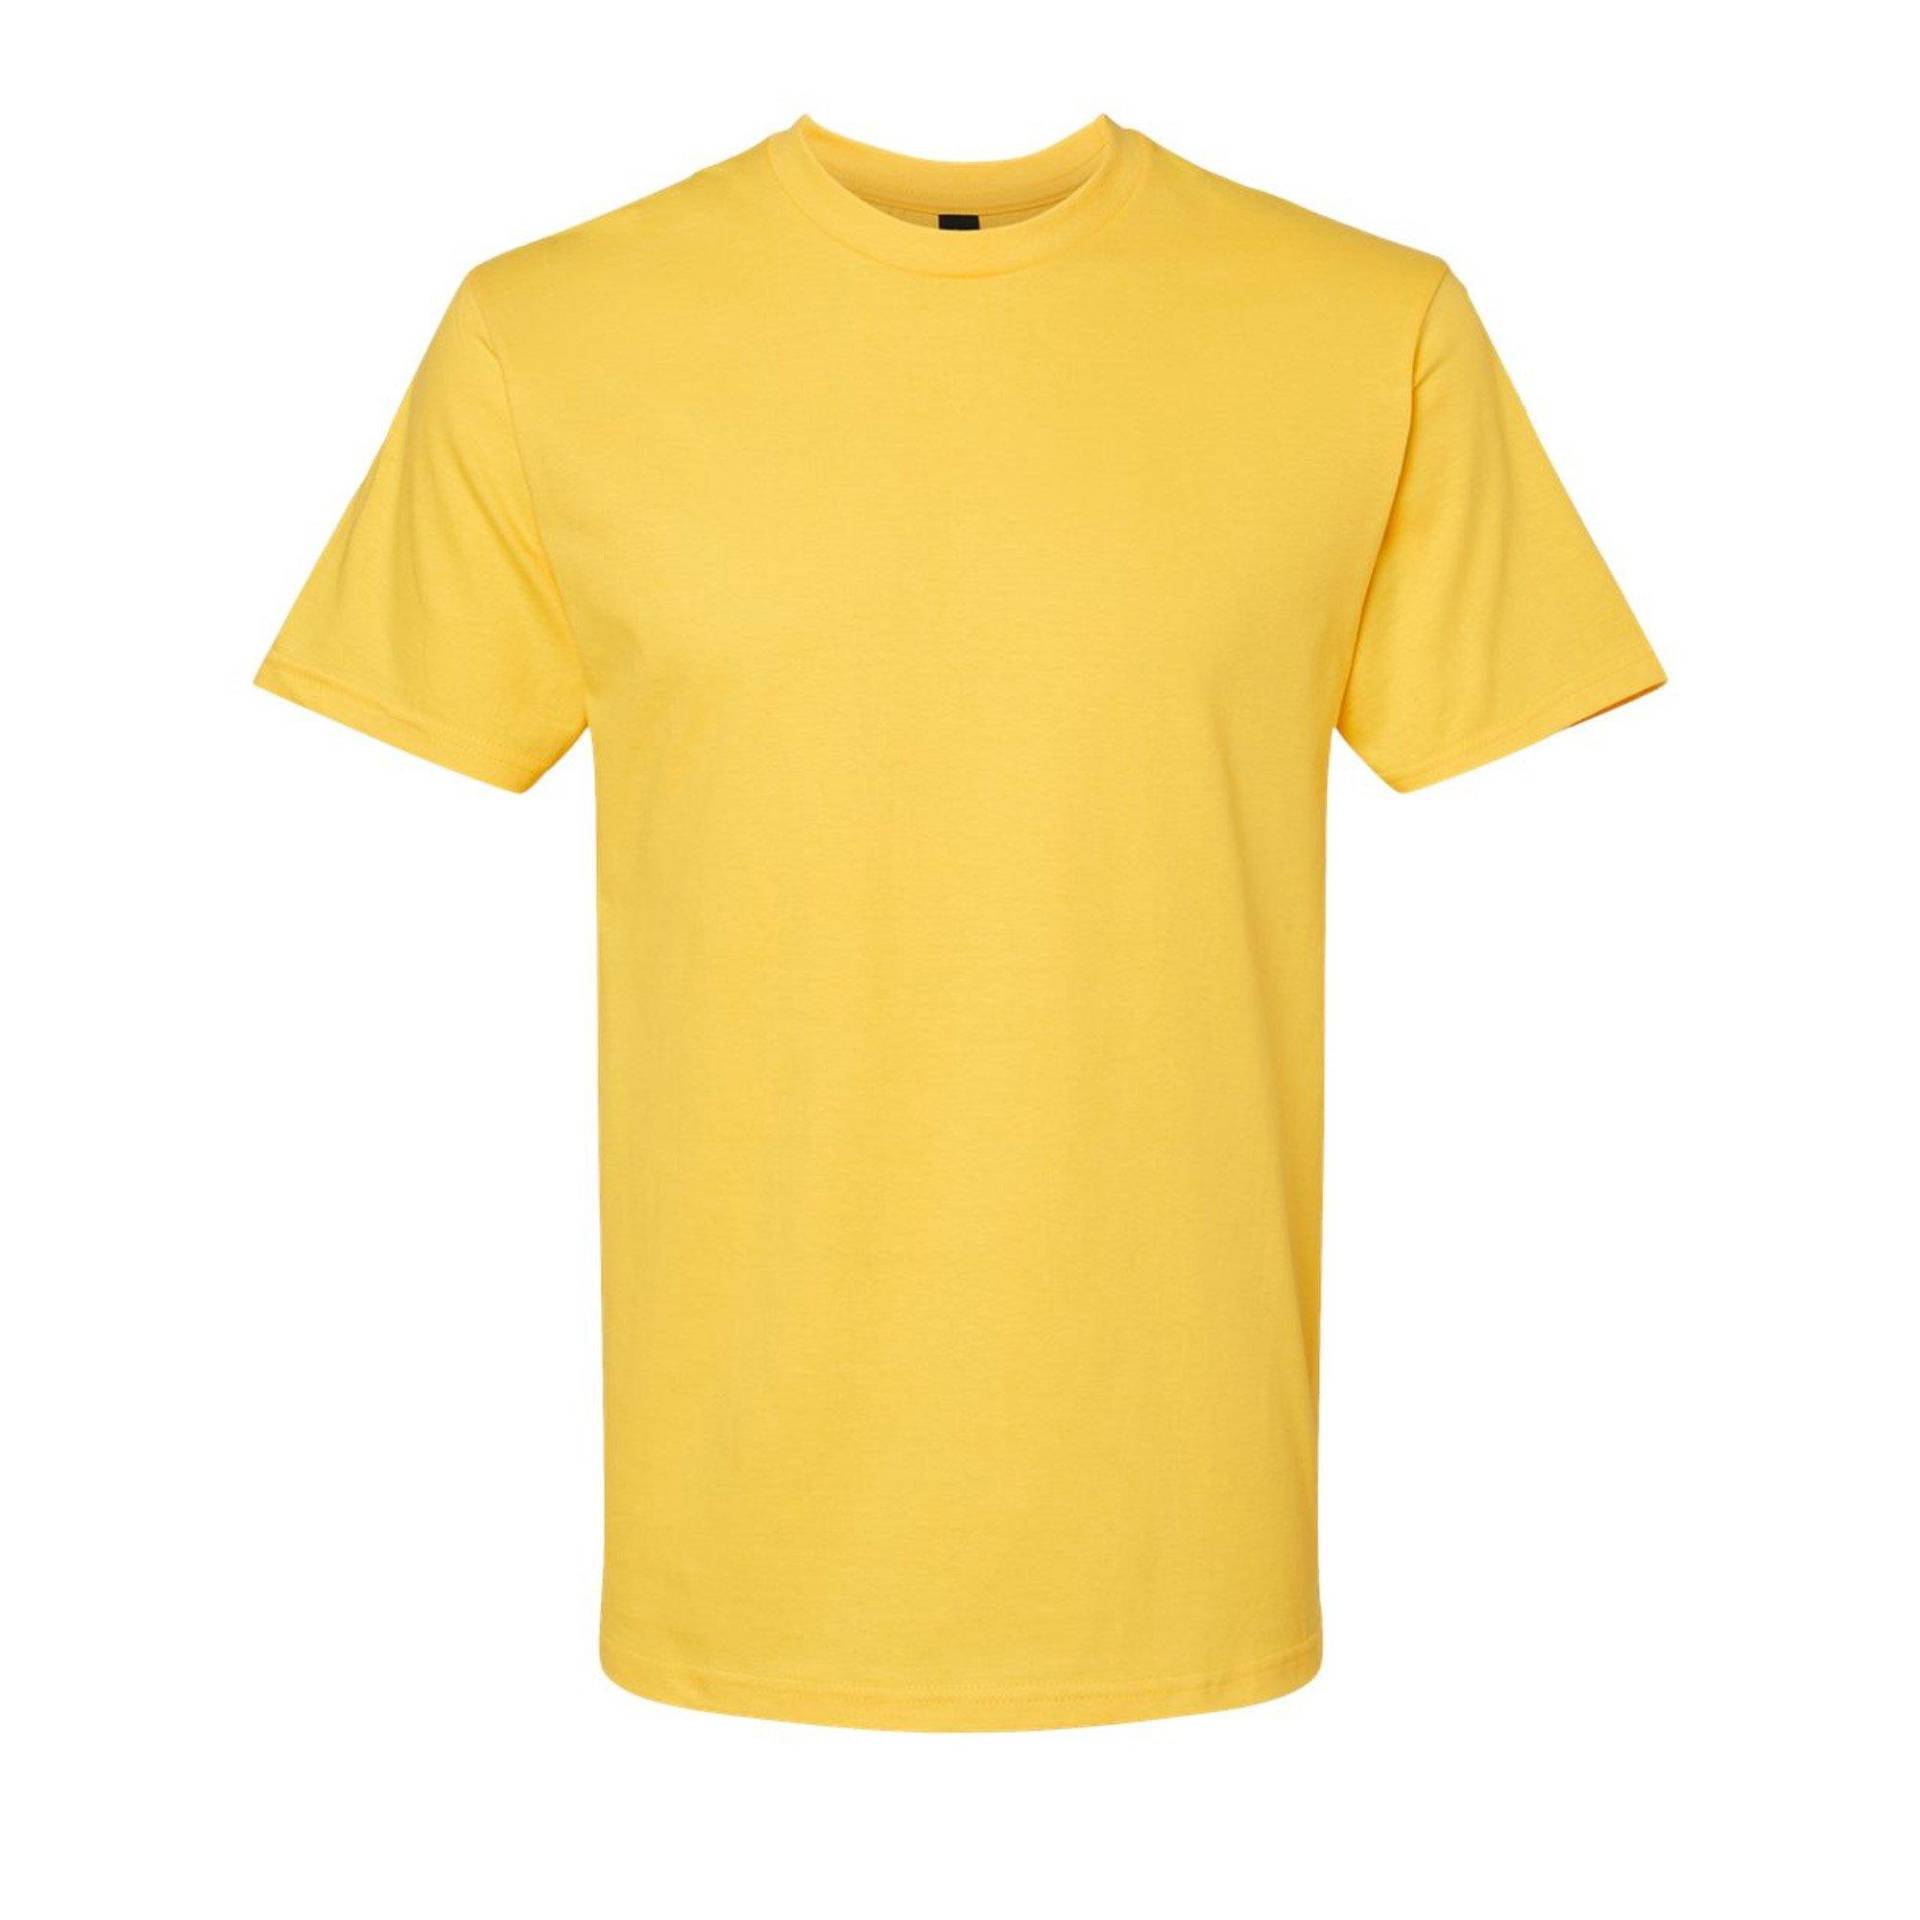 Softstyle Tshirt Damen Gelb Bunt M von Gildan